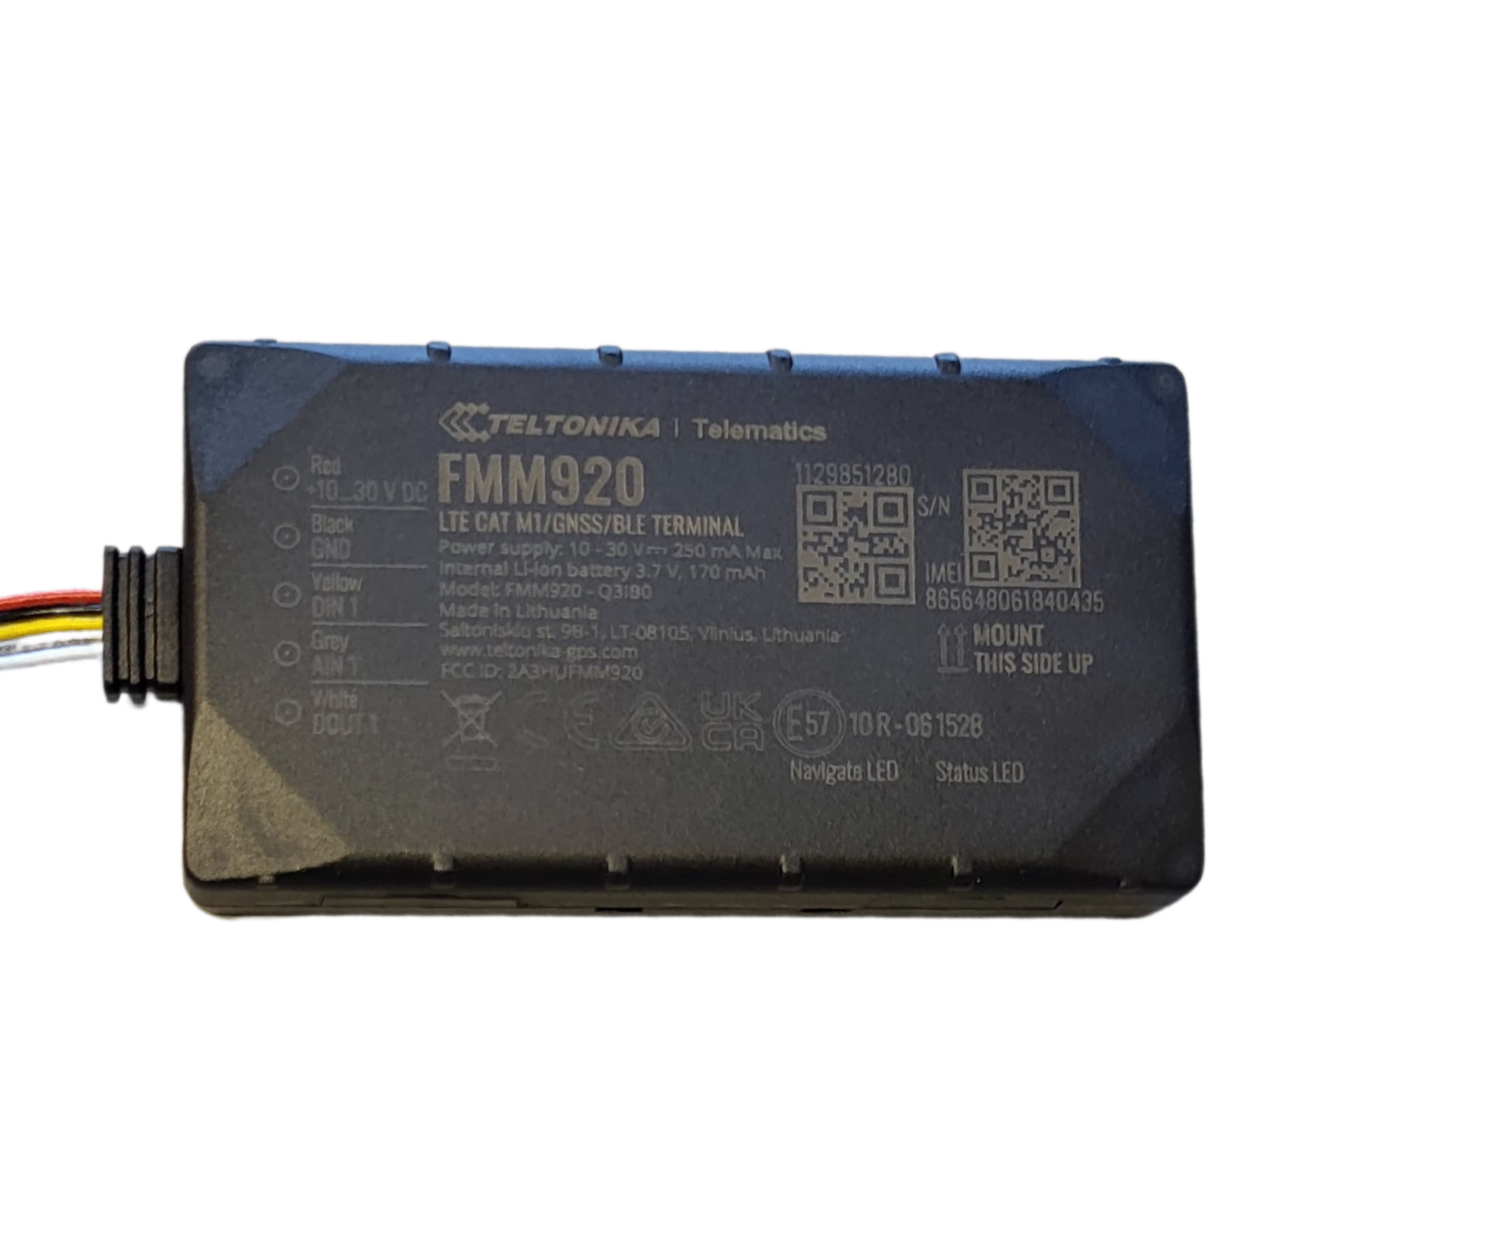 FMM 920 - 4G - Petit tracker intelligent avec Bluetooth et batterie de secours interne